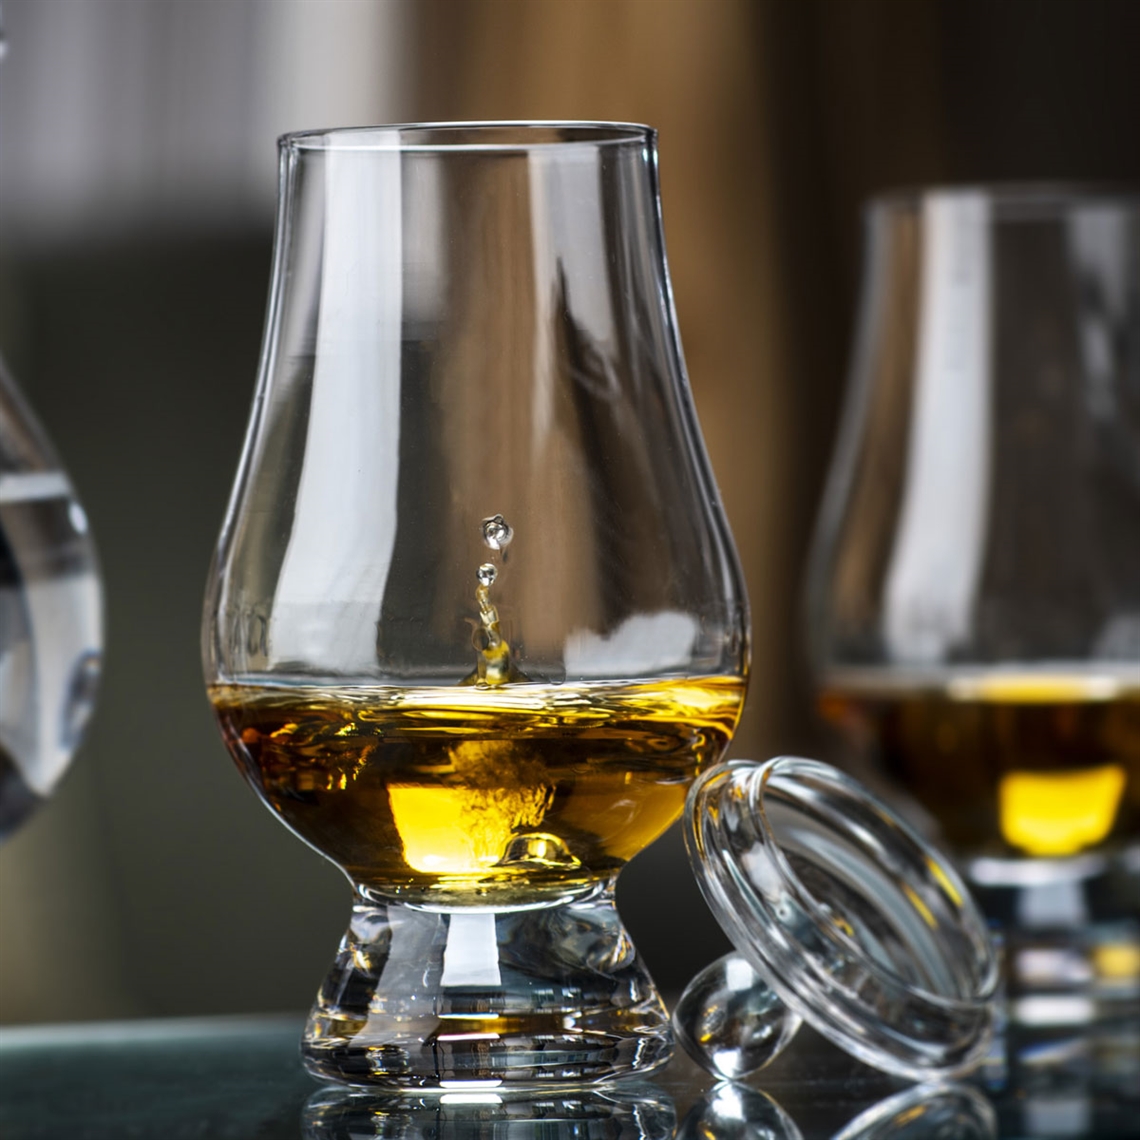 The Glencairn Official Whisky Glass Tasting Cap